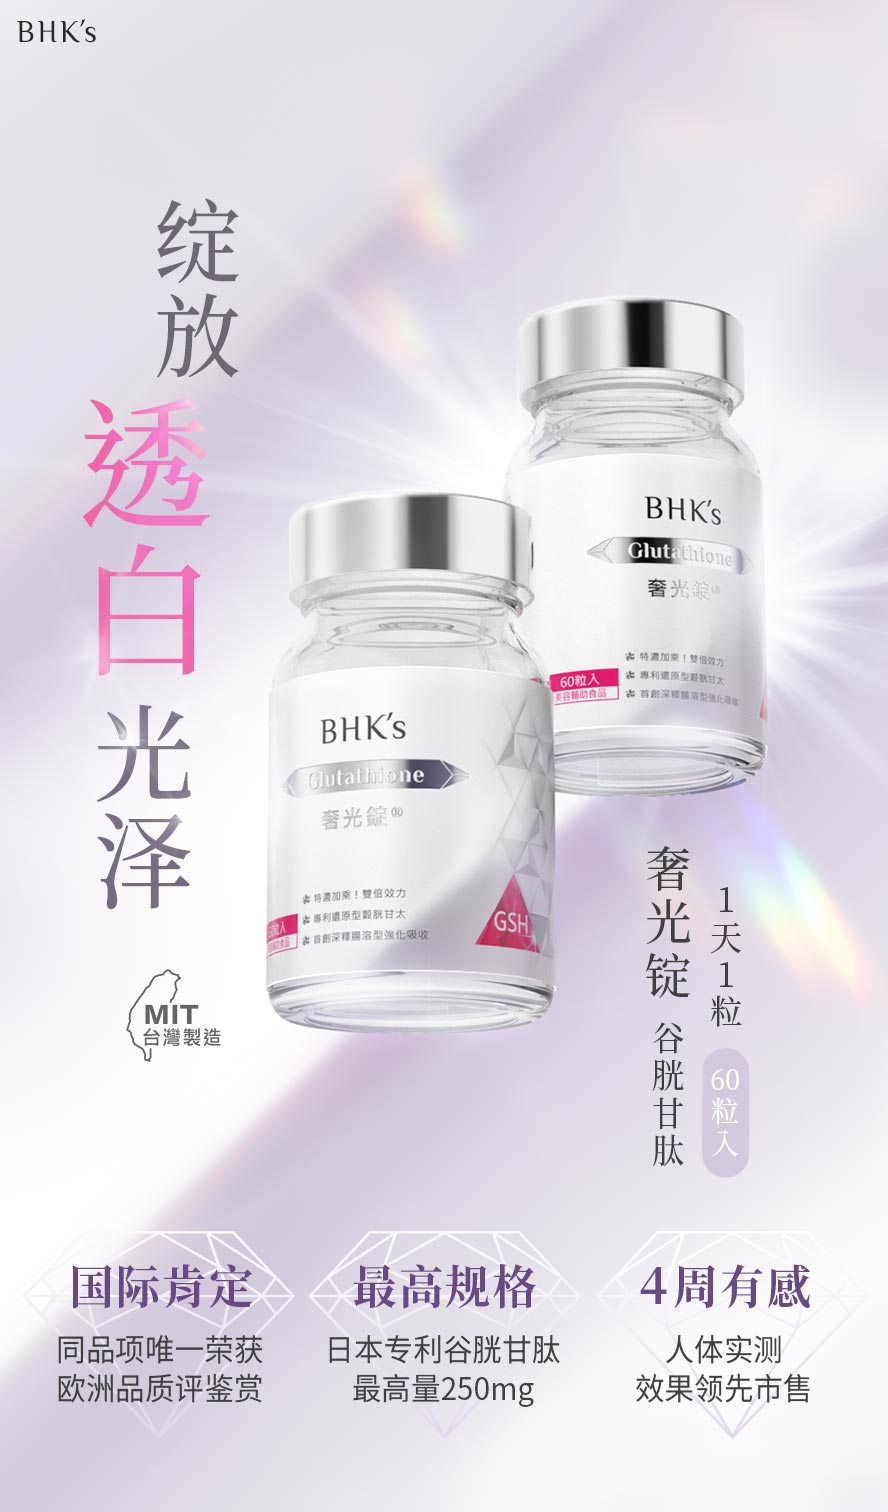 BHK's奢光锭为市售唯一经人体实证4周有效变白的美白锭，榖胱甘肽天佳最高剂量250mg。